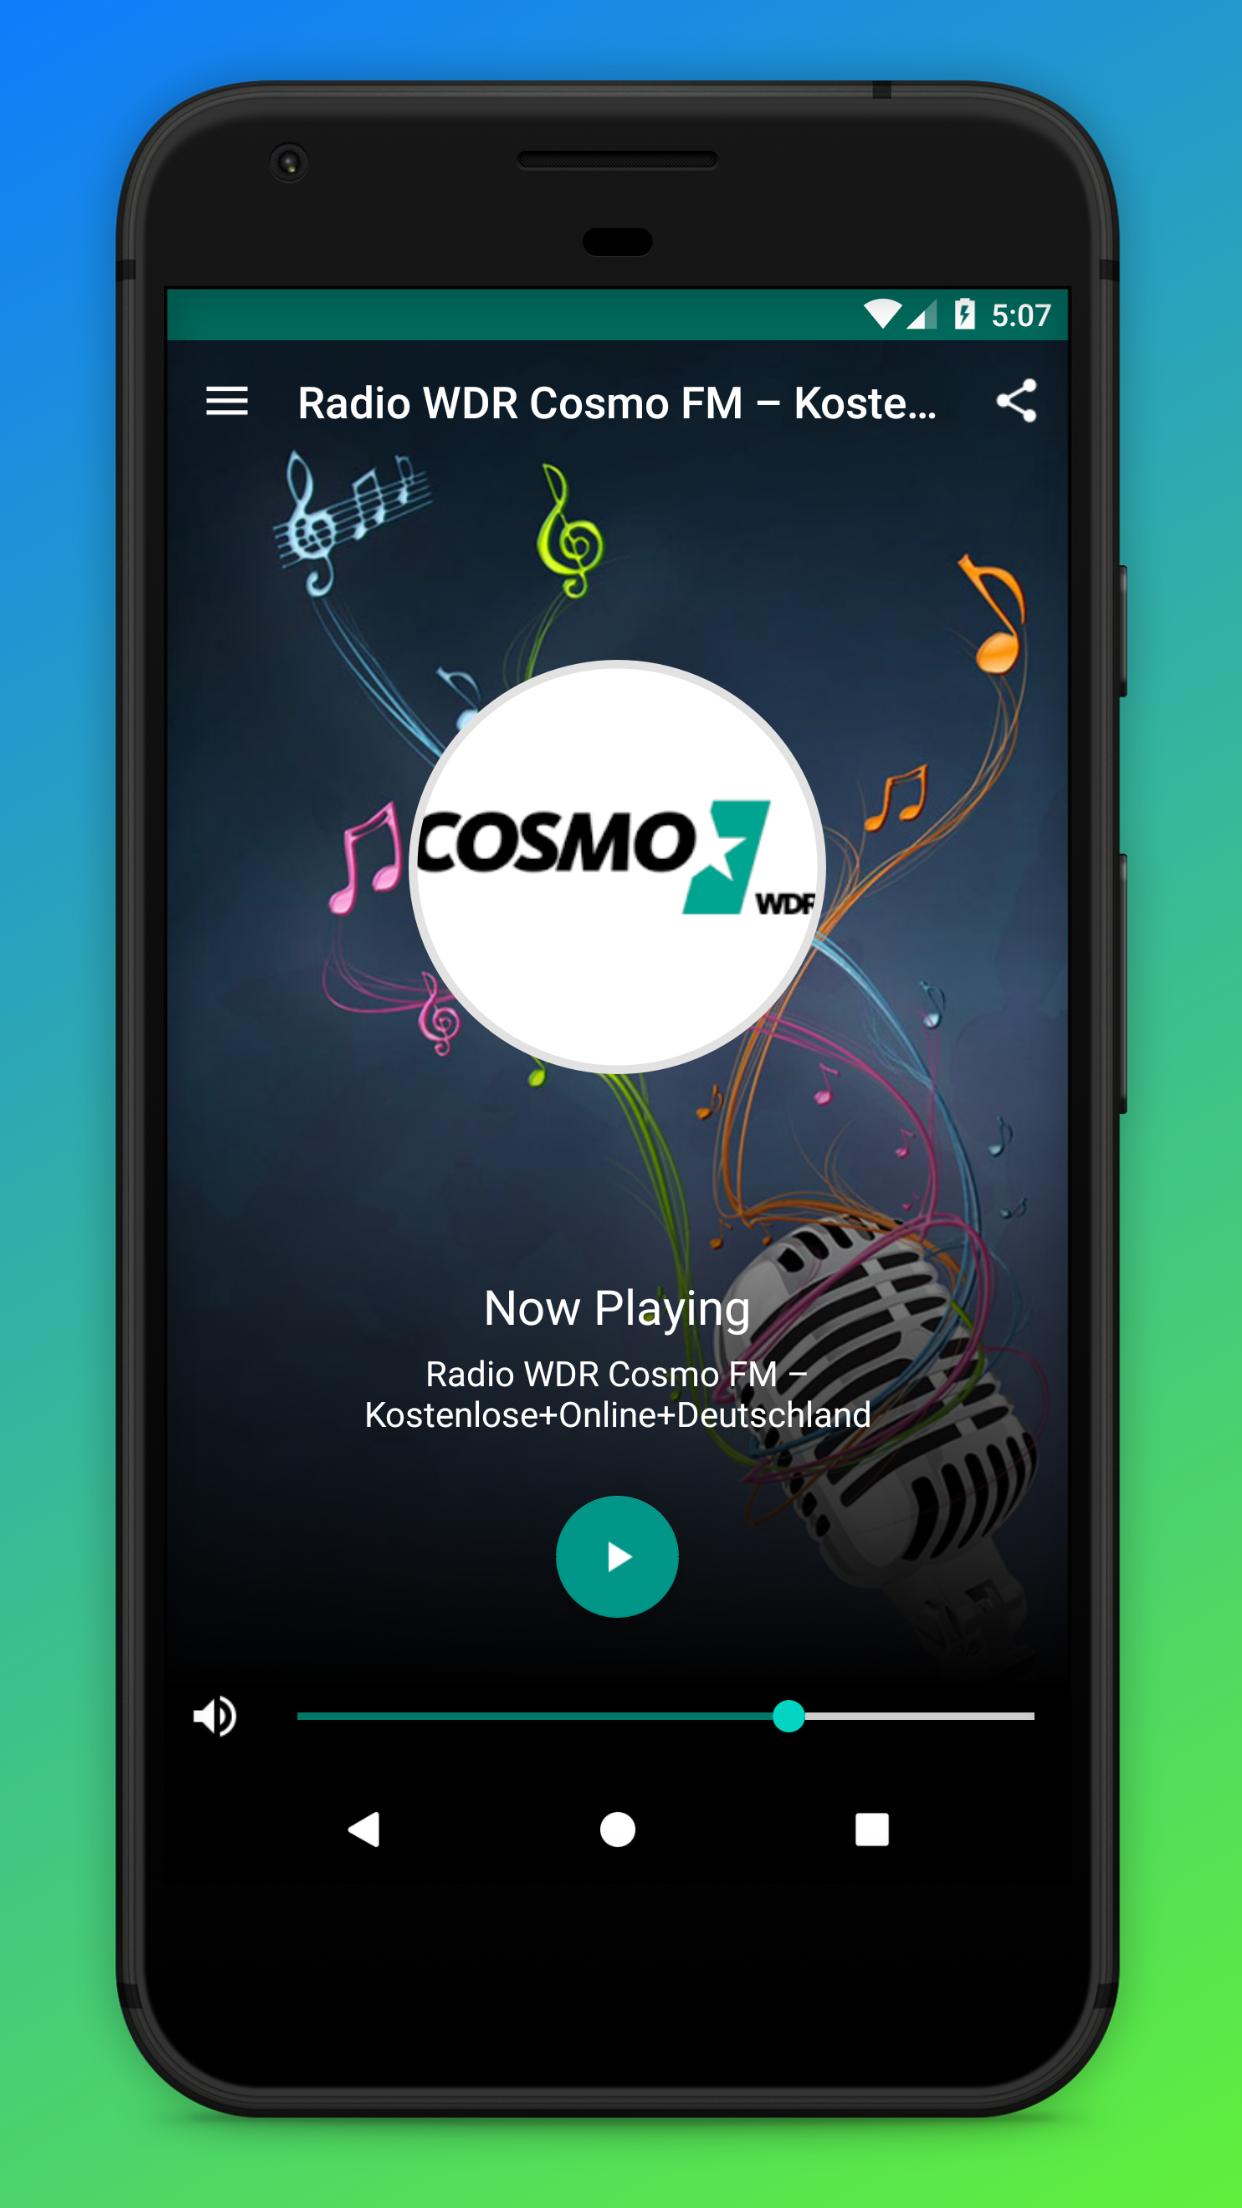 Radio WDR Cosmo FM – Kostenlose+Online+Deutschland for Android - APK  Download